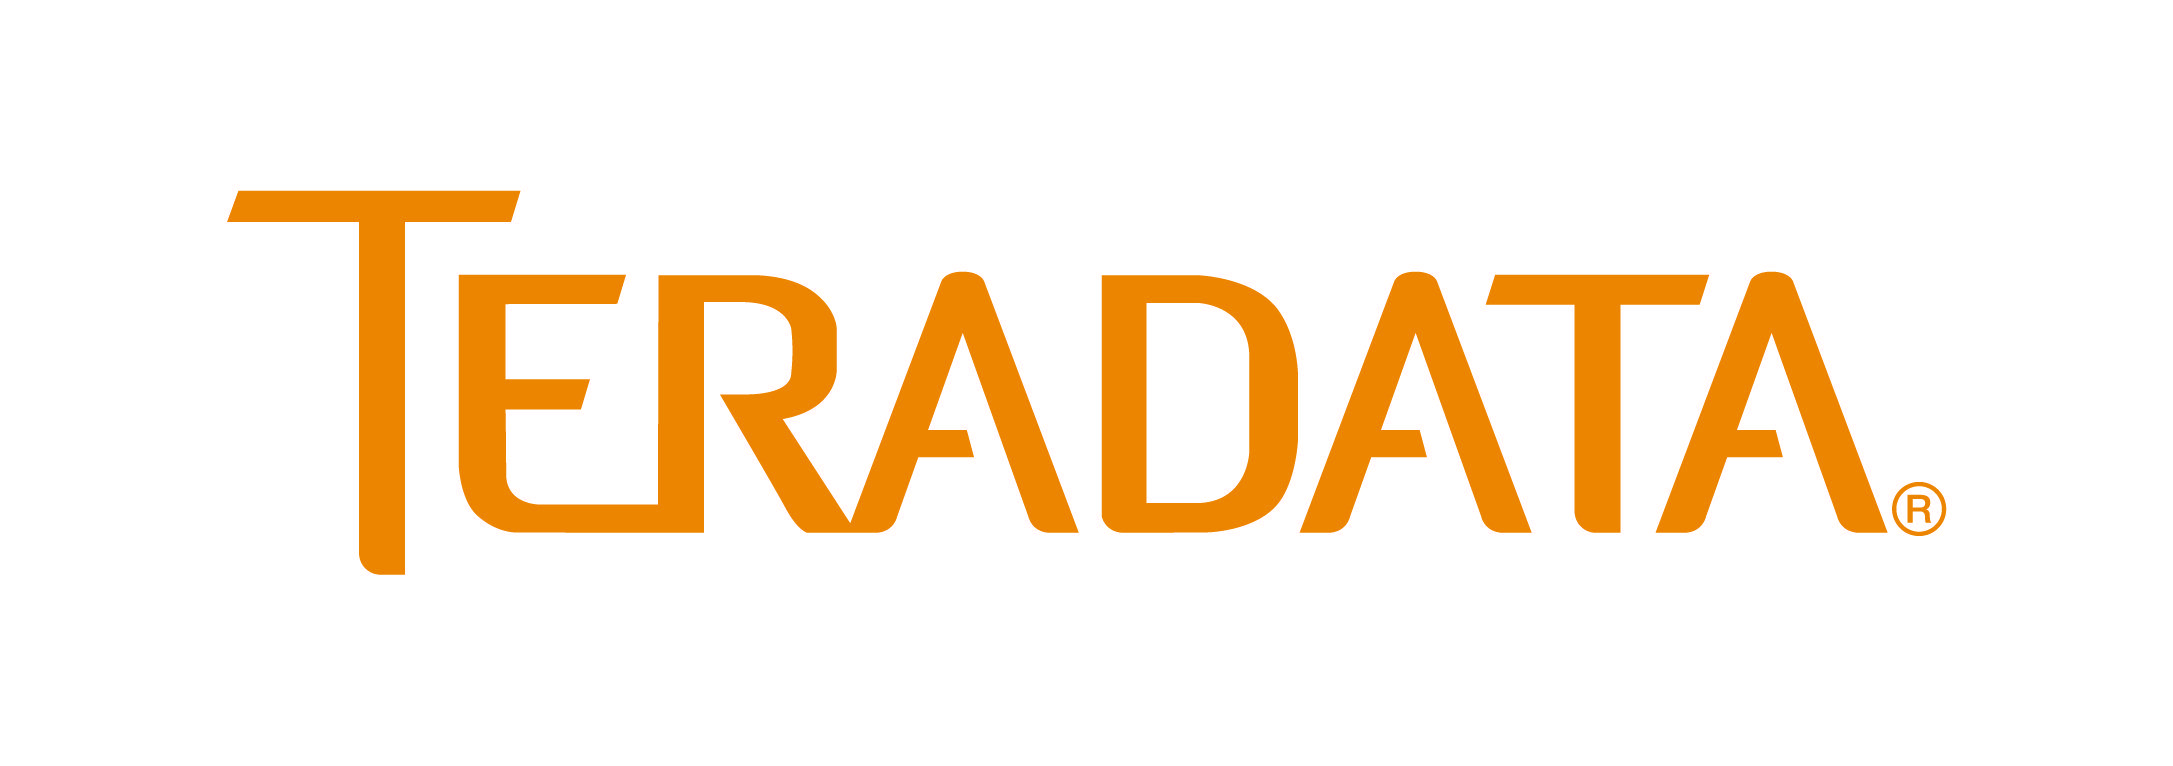 Teradata Logo - teradata-logo » Media | GovLoop